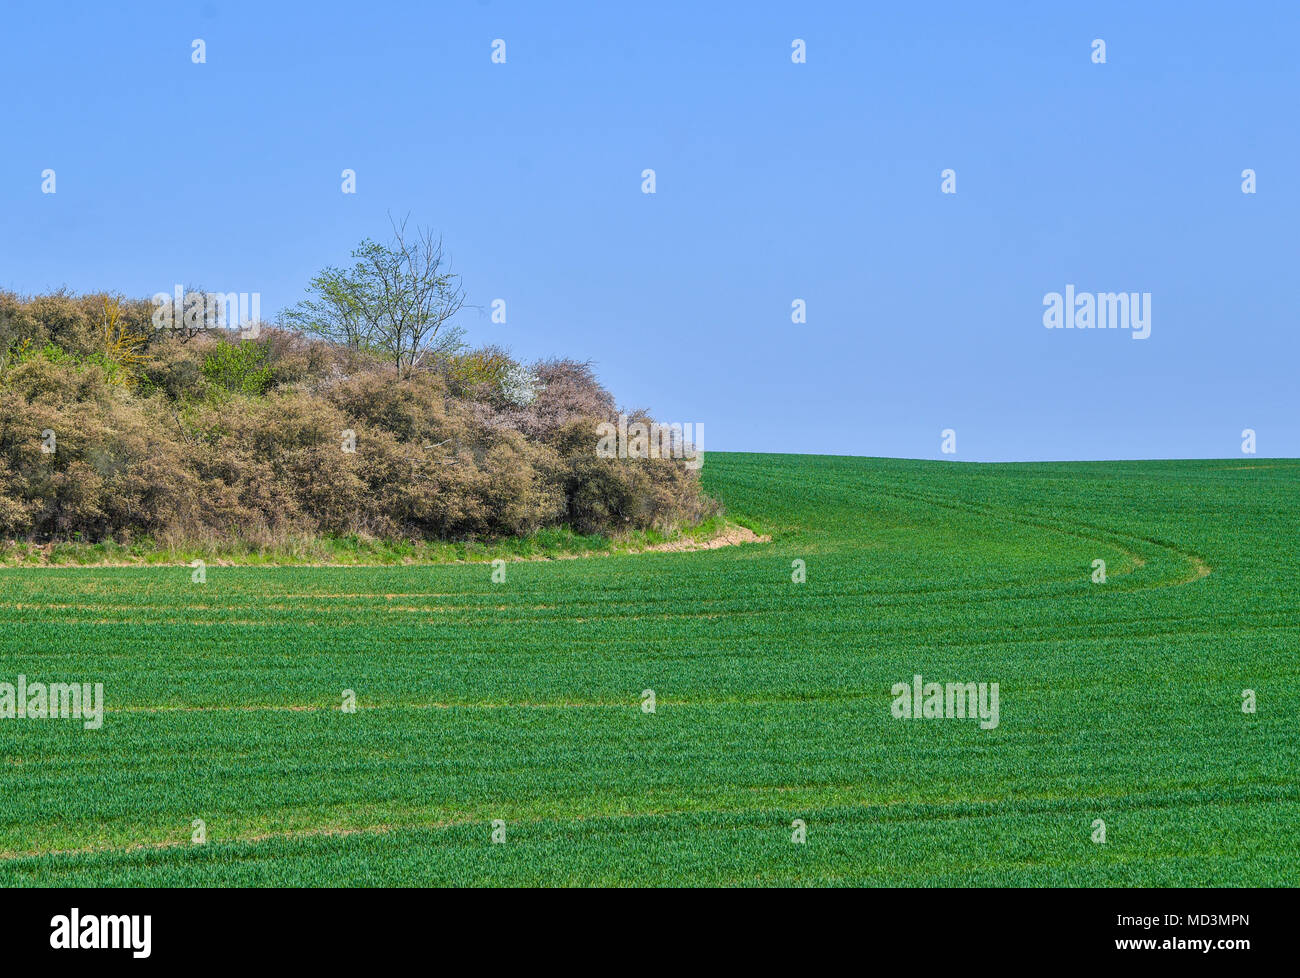 17 aprile 2018, Germania, Angermuende: un verde campo di grano in Uckermark county vicino Angermuende. Foto: Patrick Pleul/dpa-Zentralbild/ZB Foto Stock